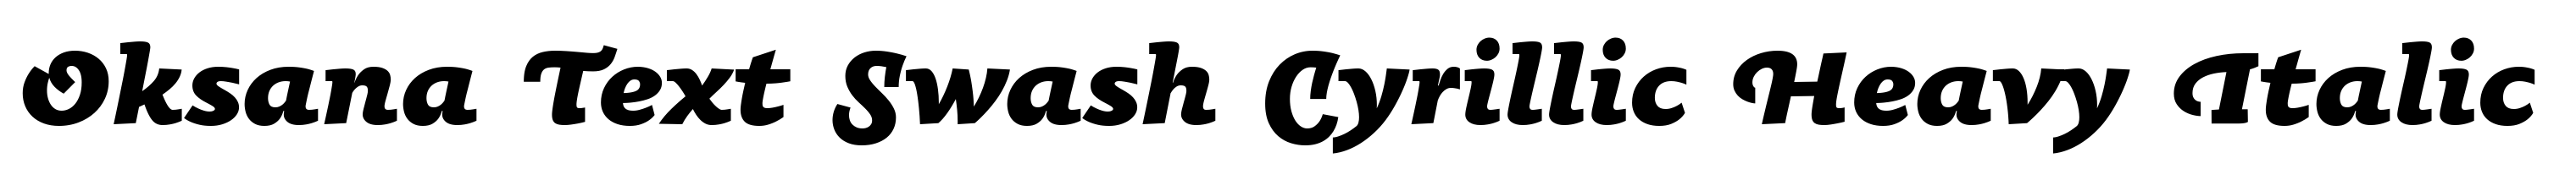 Oksana Text Swash Cyrillic Heavy Italic